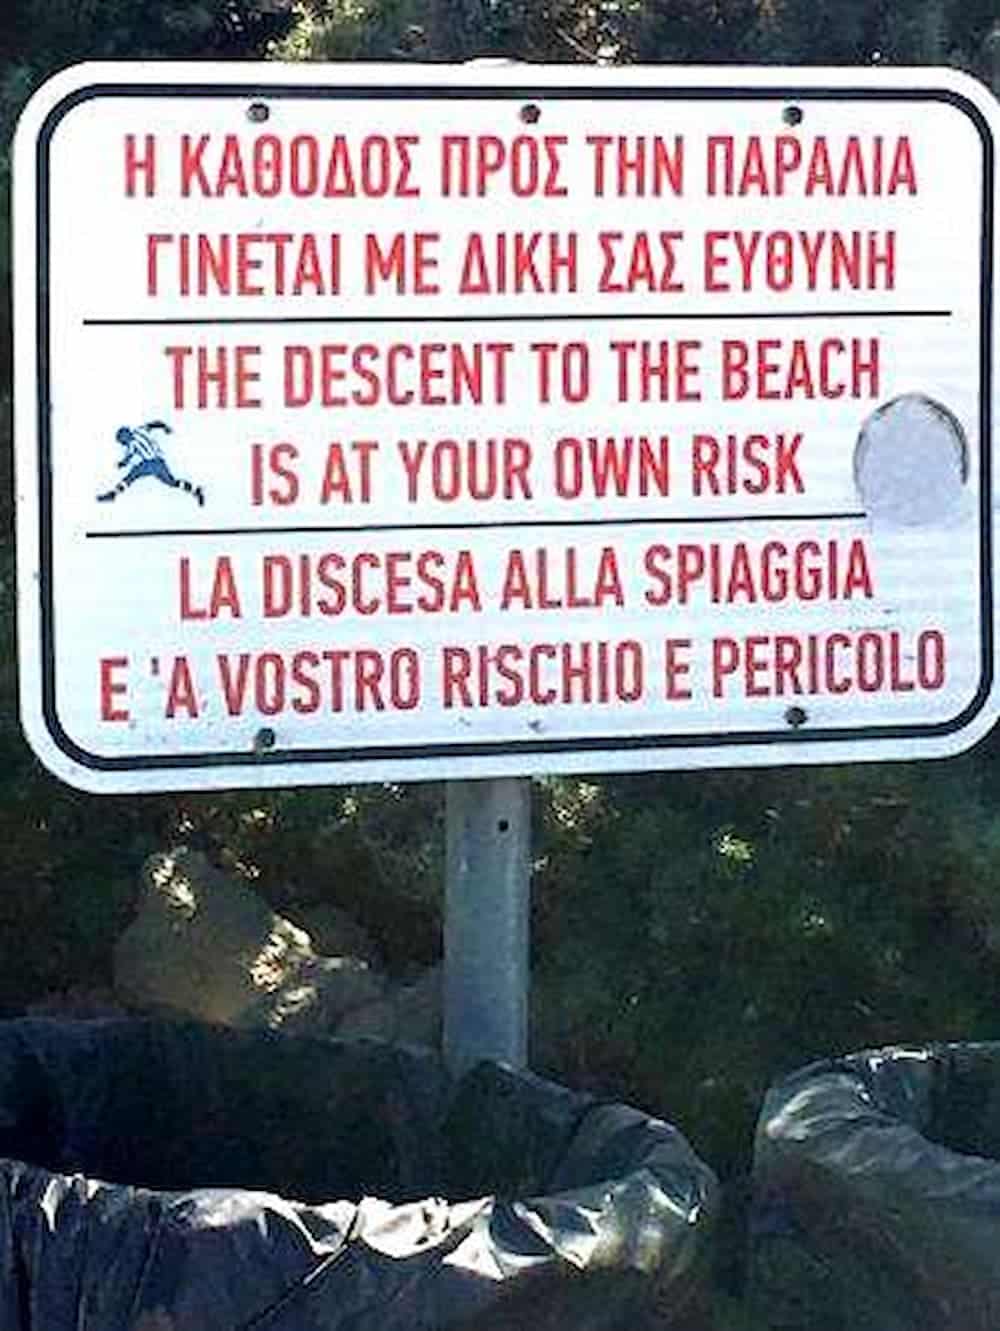 Η πιο επικίνδυνη παραλία στο Αιγαίο βρίσκεται στην Μήλο - «Η κάθοδος γίνεται με δική σας ευθύνη» (εικόνα & βίντεο)